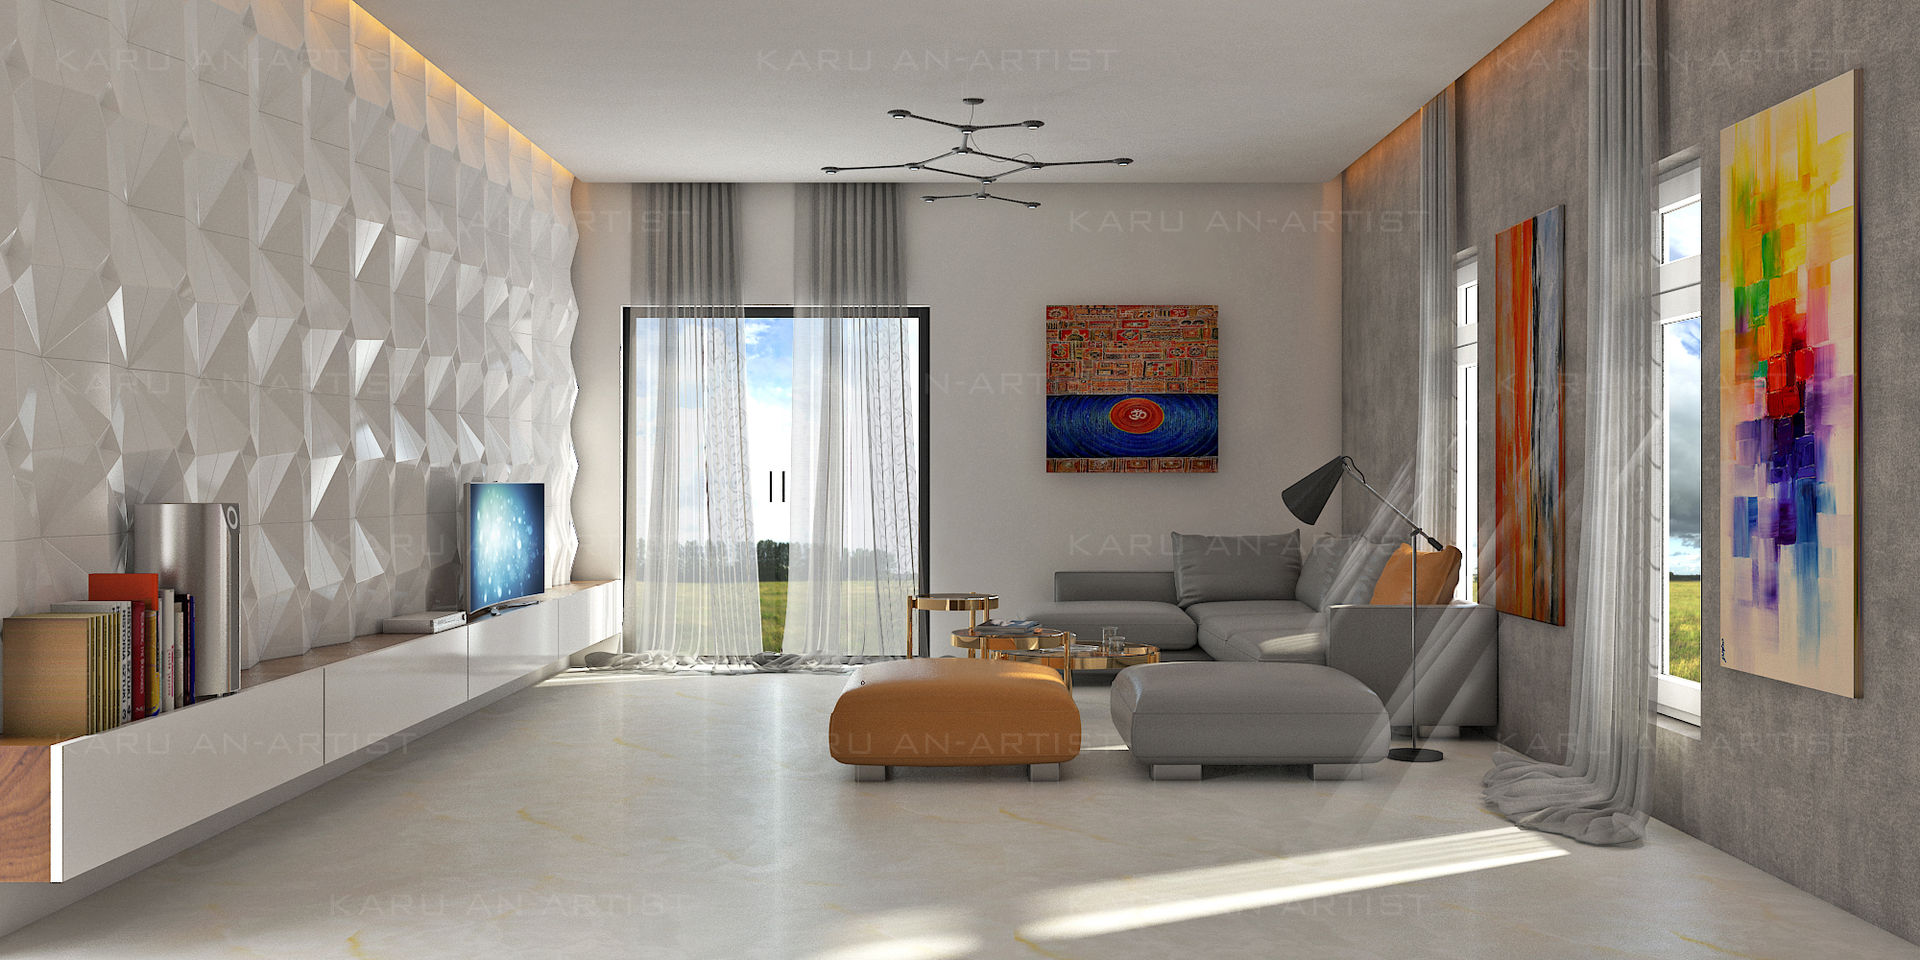 A Modern Living Room, KARU AN ARTIST KARU AN ARTIST Nowoczesny salon